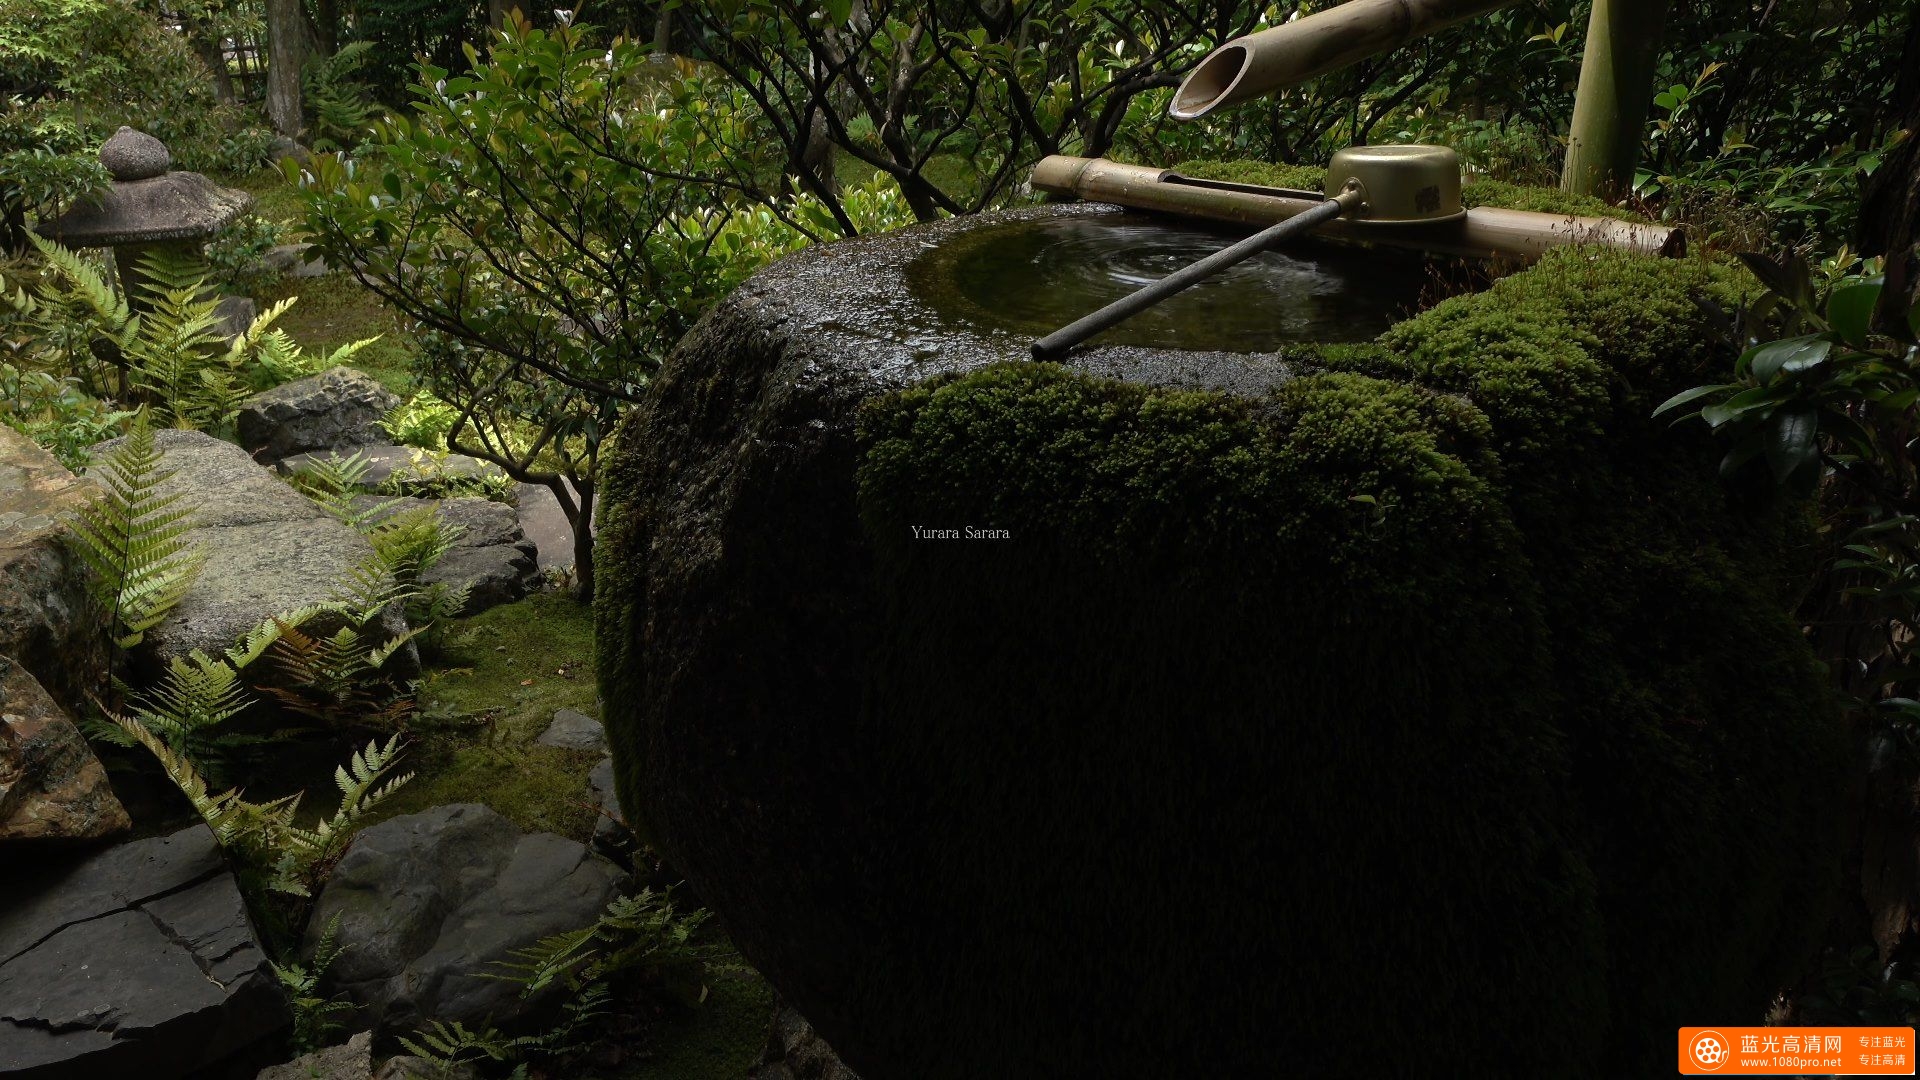 大法院・青葉 (妙心寺塔頭) 京都の庭園 Daiho-in Temple The Garden of Kyoto Japan-4.jpg